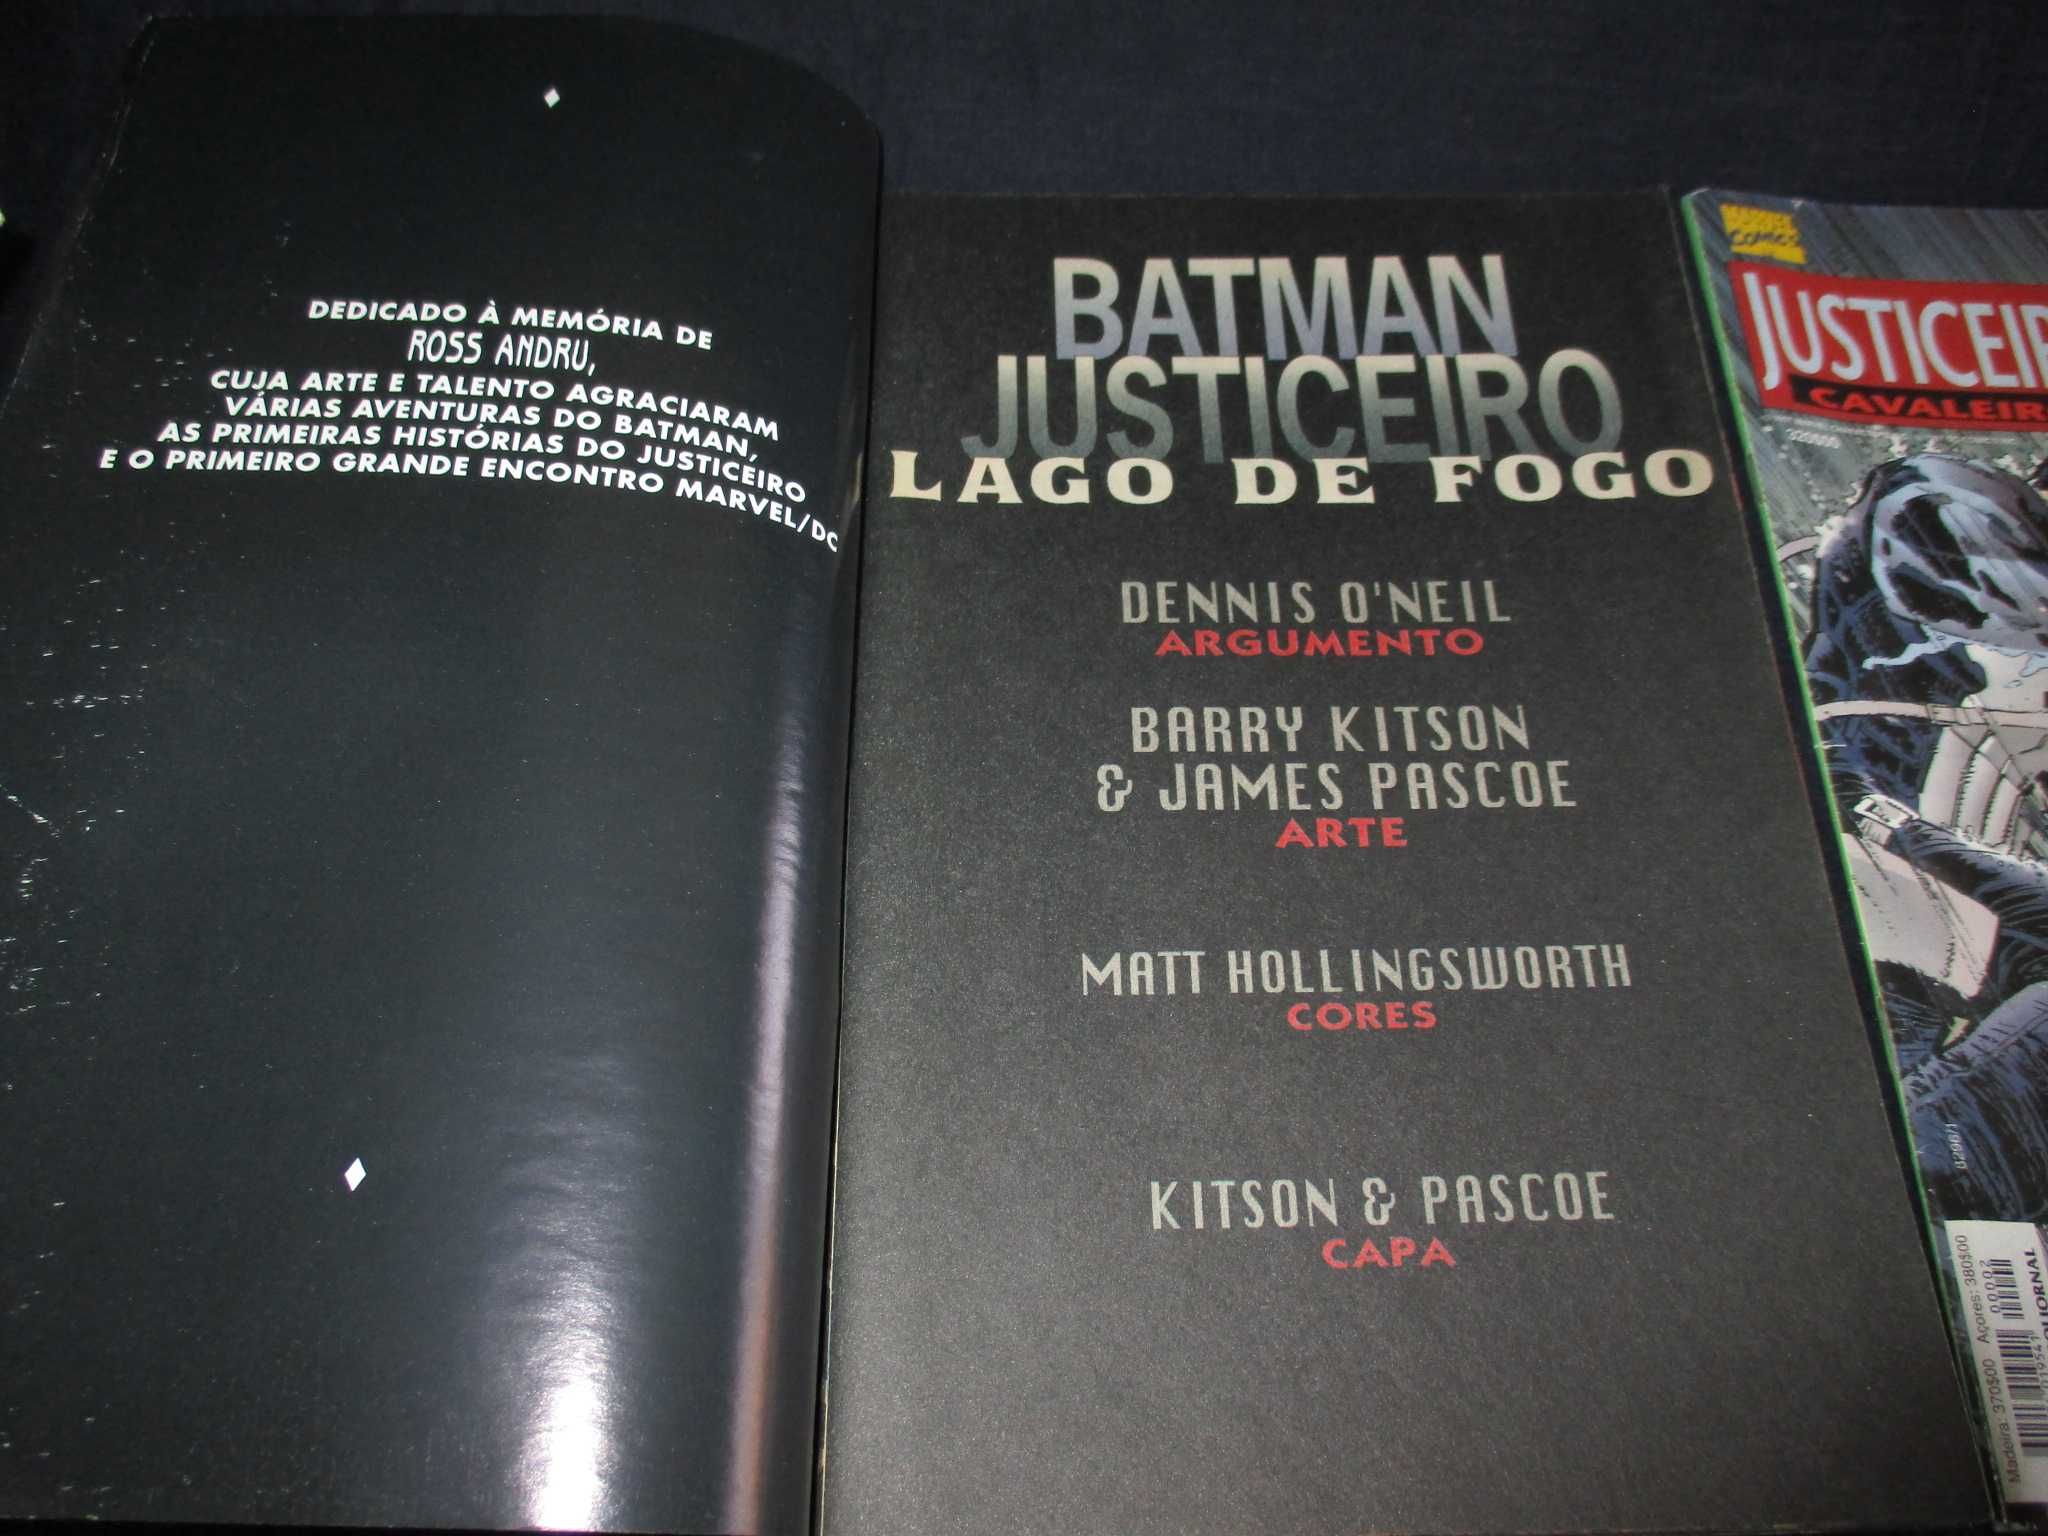 Livro Batman & Justiceiro Lago de Fogo e Cavaleiros Mortíferos